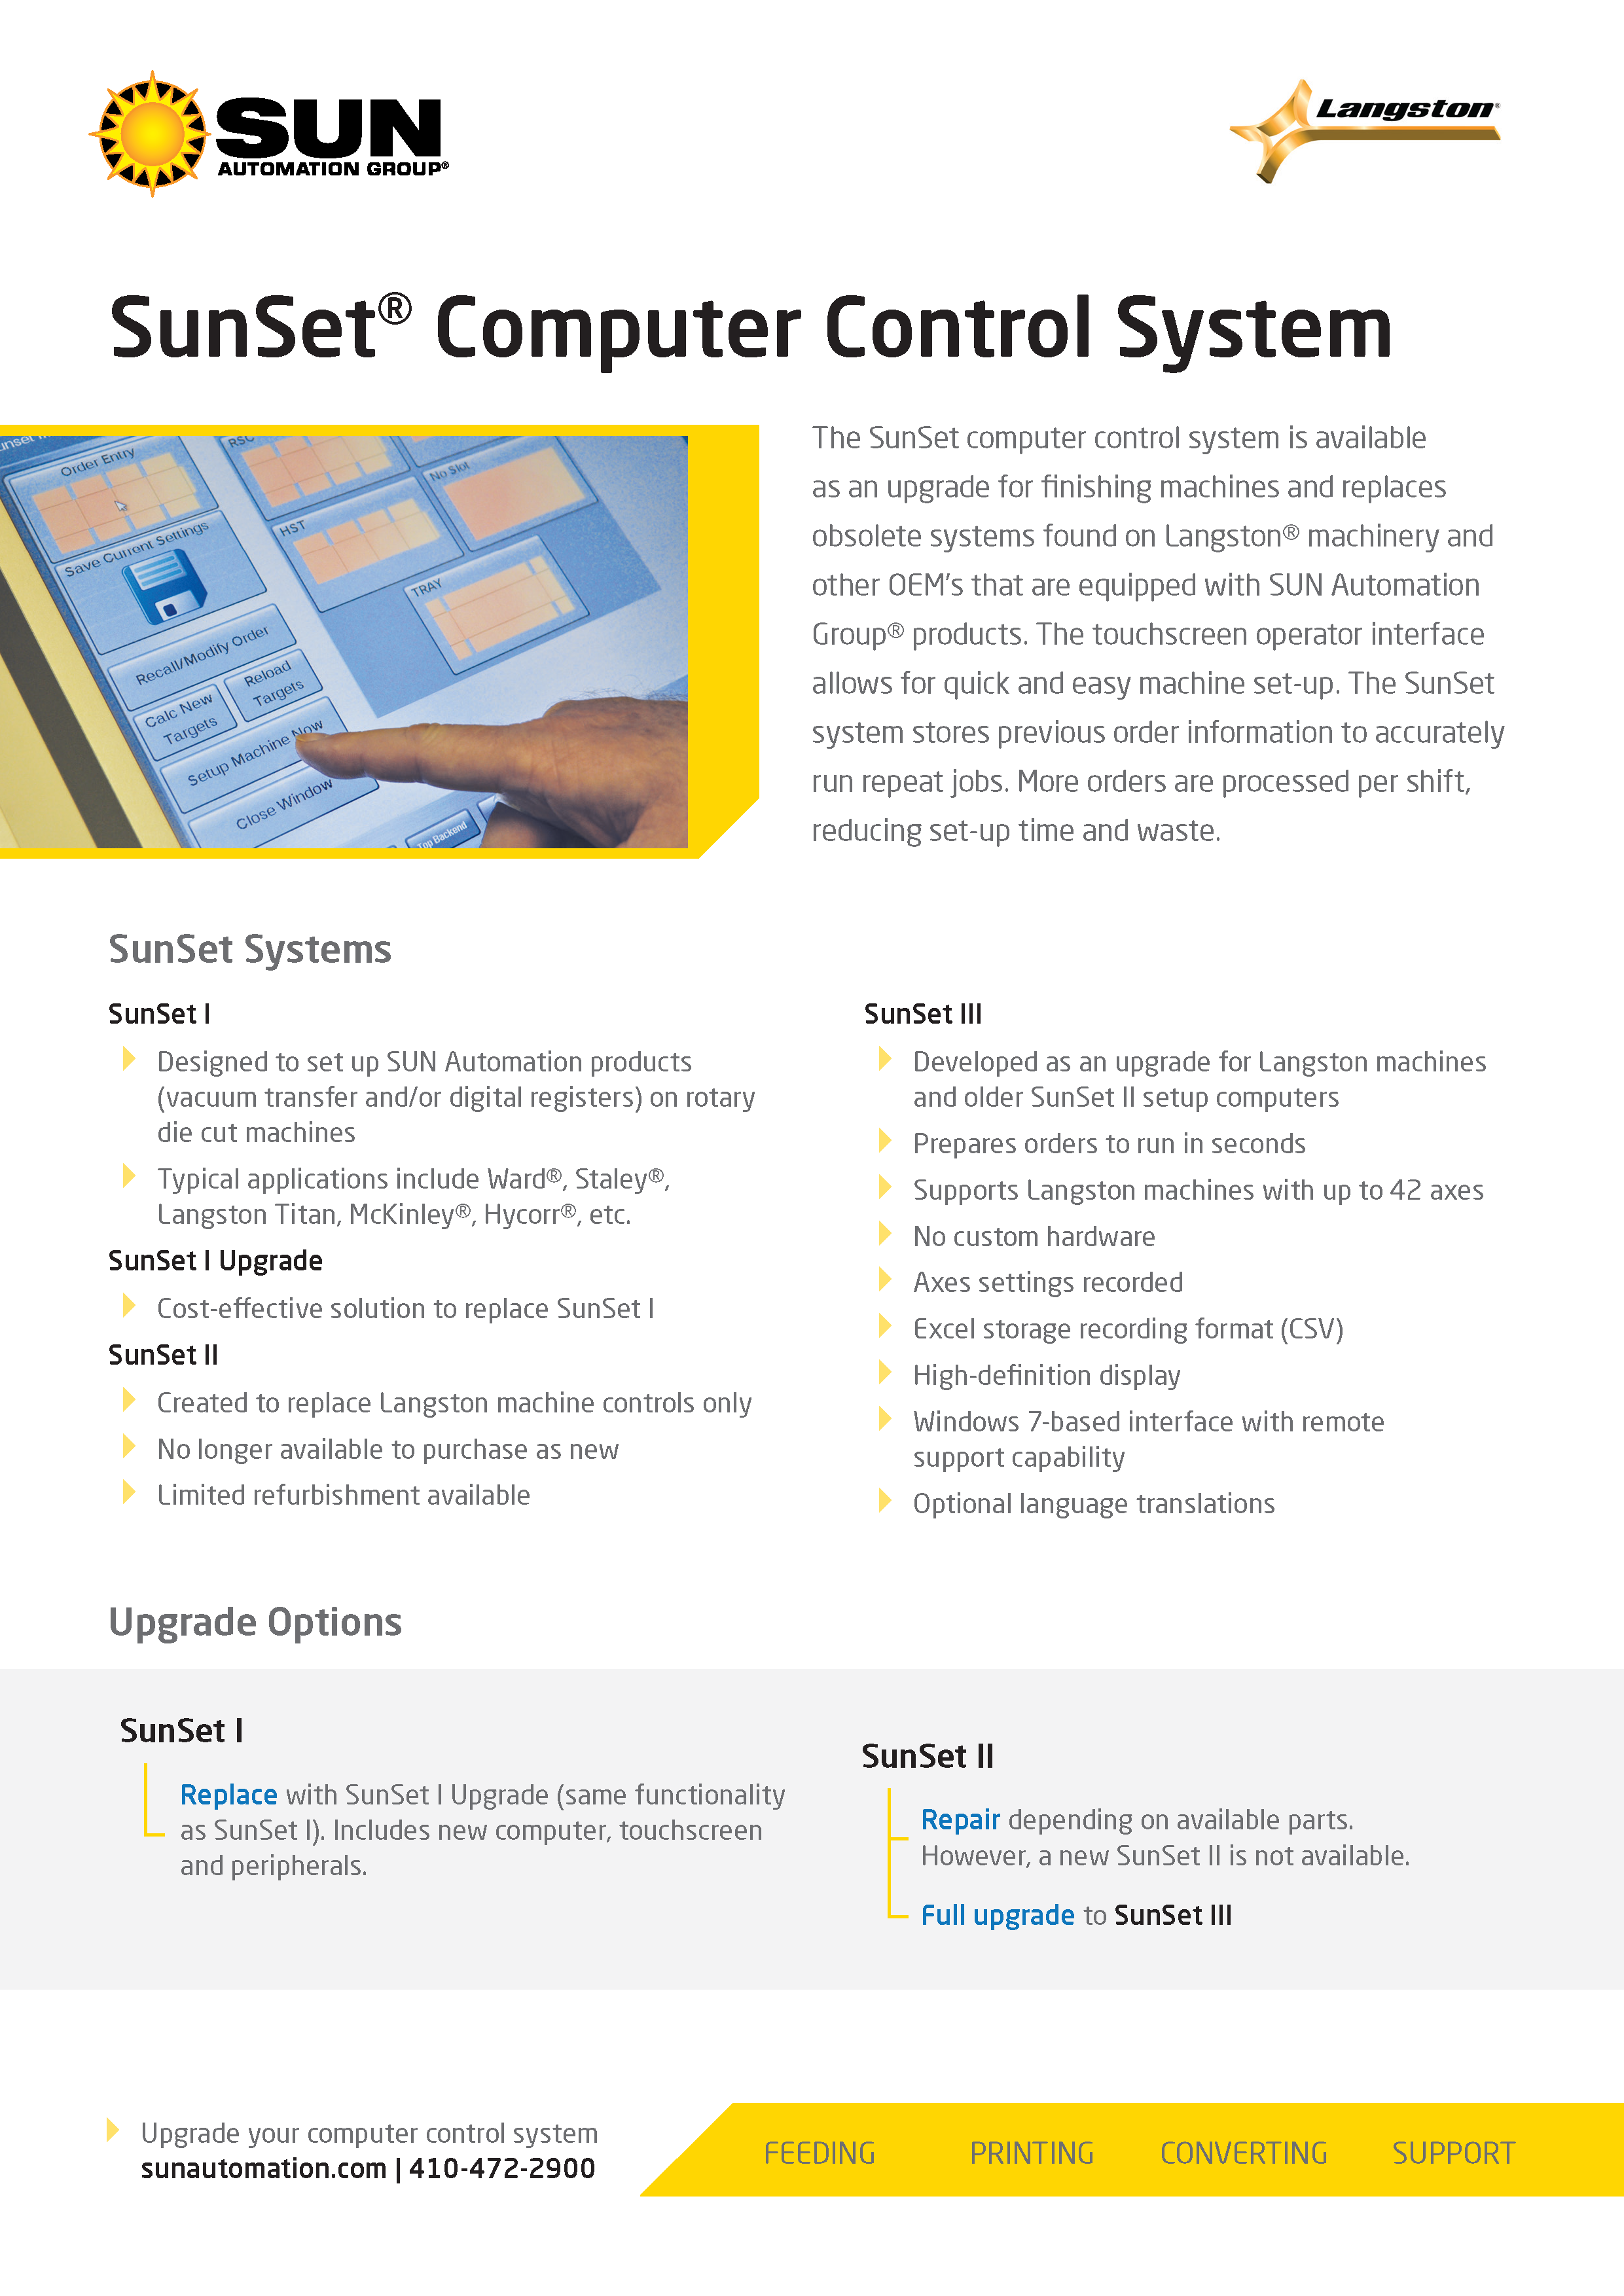 Conozca más del Sistema computarizado SunSet para puesta a punto de Sun Automation Group en el folleto.